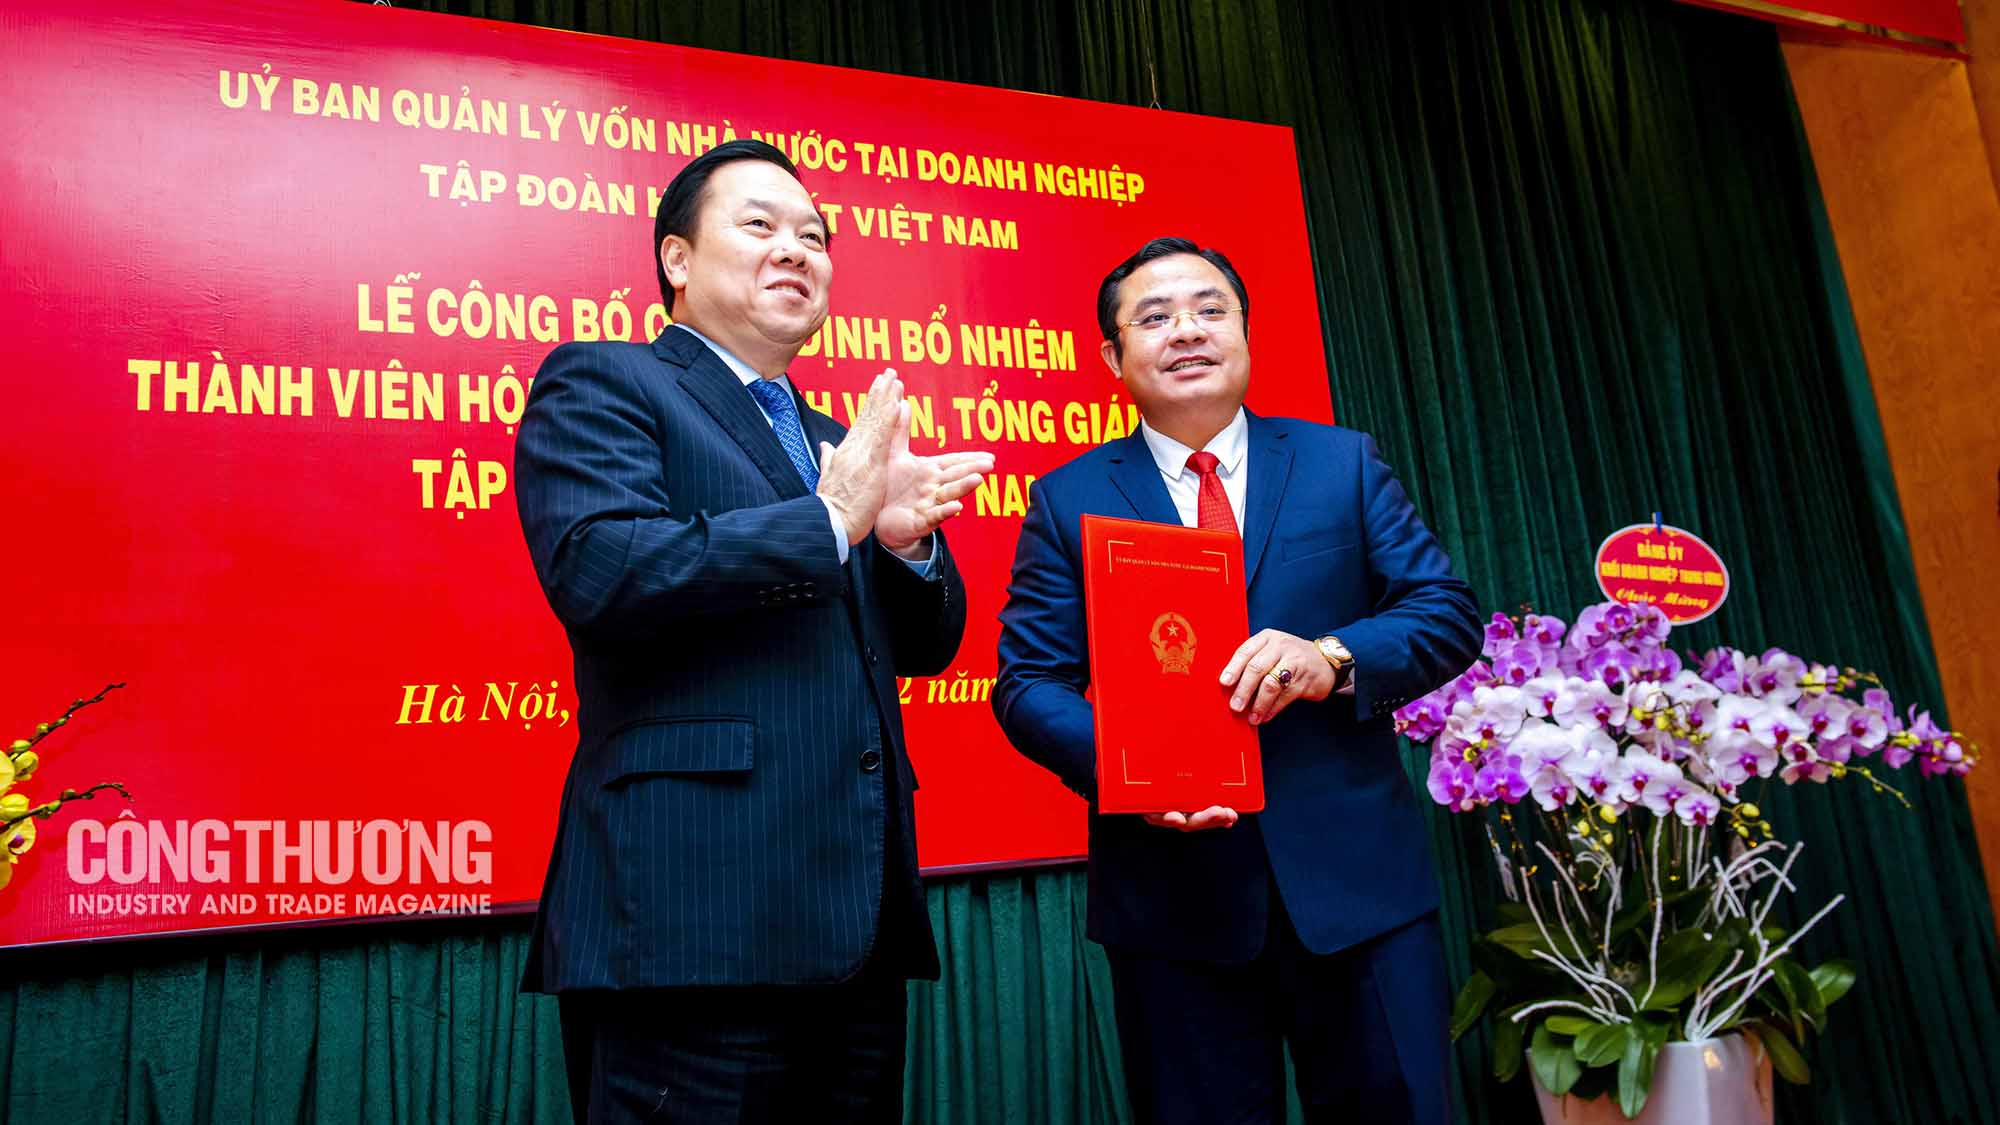 lễ bổ nhiệm Thành viên Hội đồng thành viên, Tổng Giám đốc Tập đoàn cho ông Phùng Quang Hiệp 